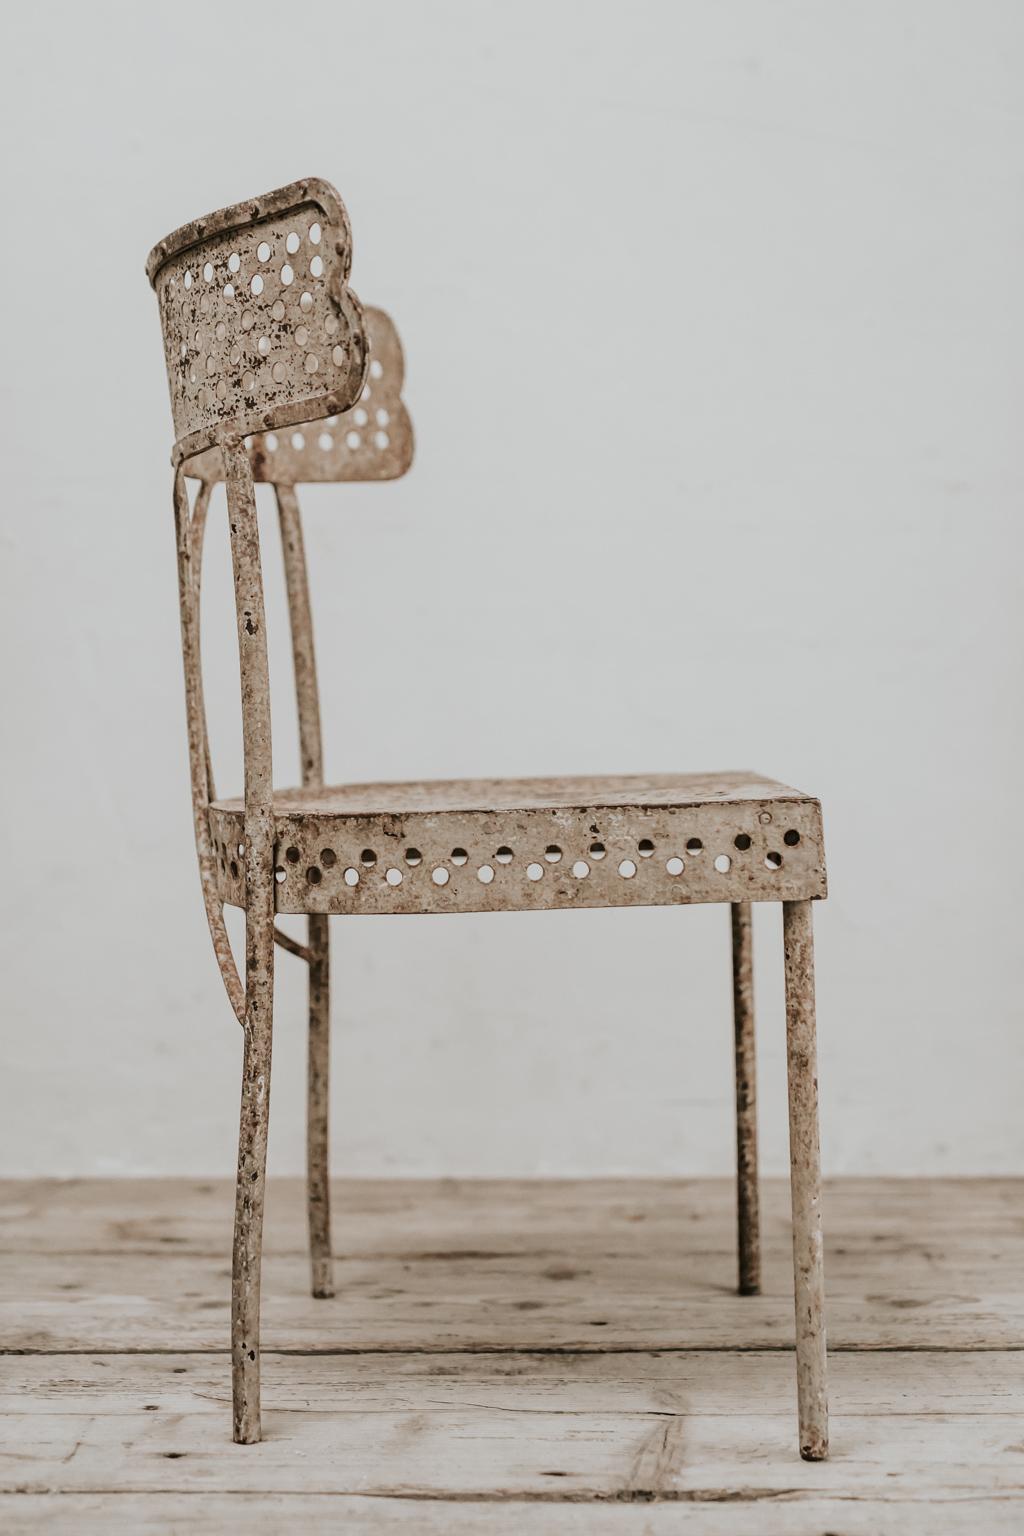 Ein skurriles, sehr ungewöhnliches Modell eines französischen Gartenstuhls aus Eisen, der sowohl drinnen als auch draußen verwendet werden kann, sehr charmant!